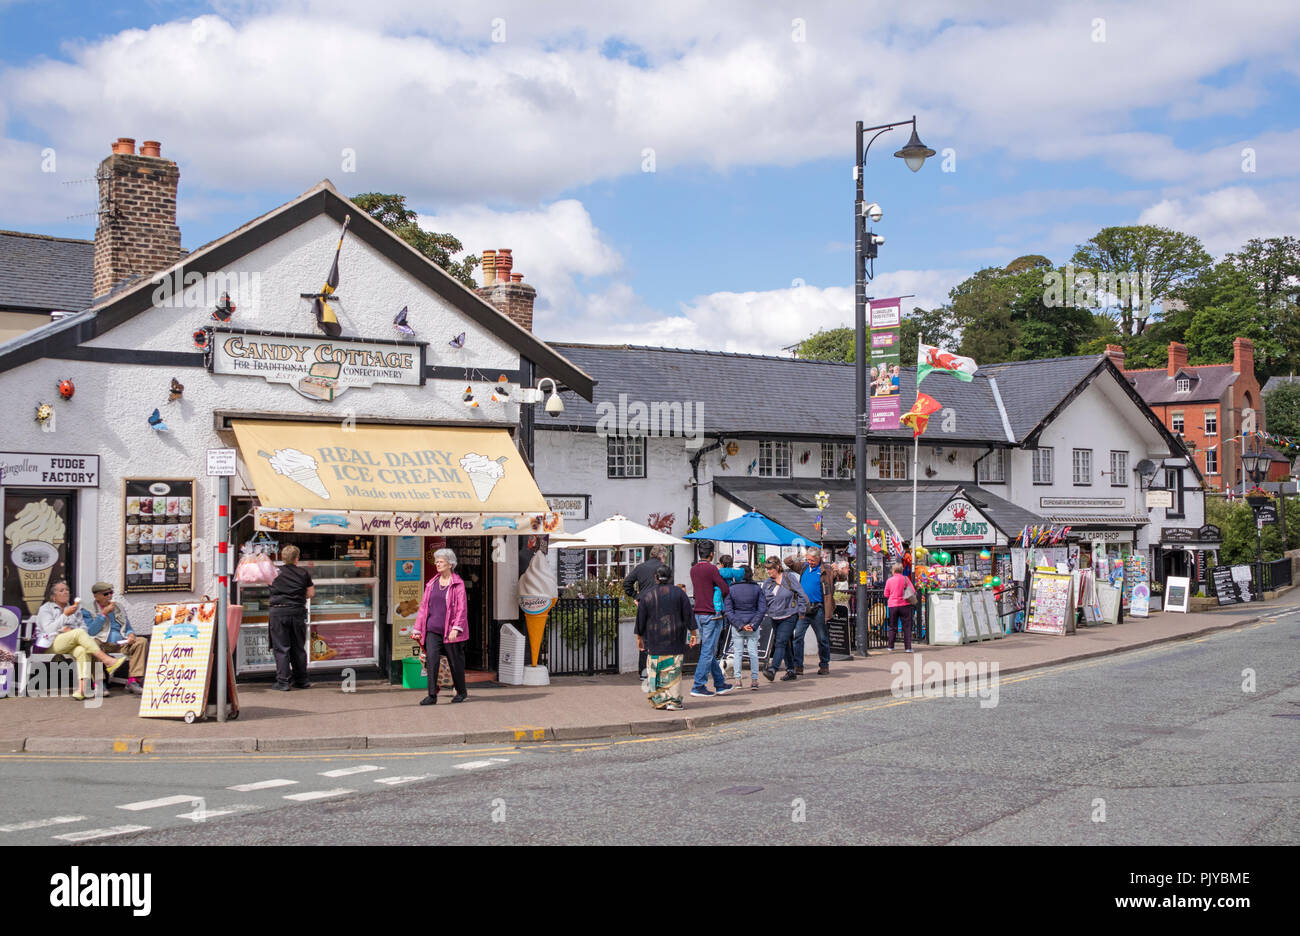 La célèbre ville de Gallois, Llangollen Denbighshire, Wales, UK Banque D'Images